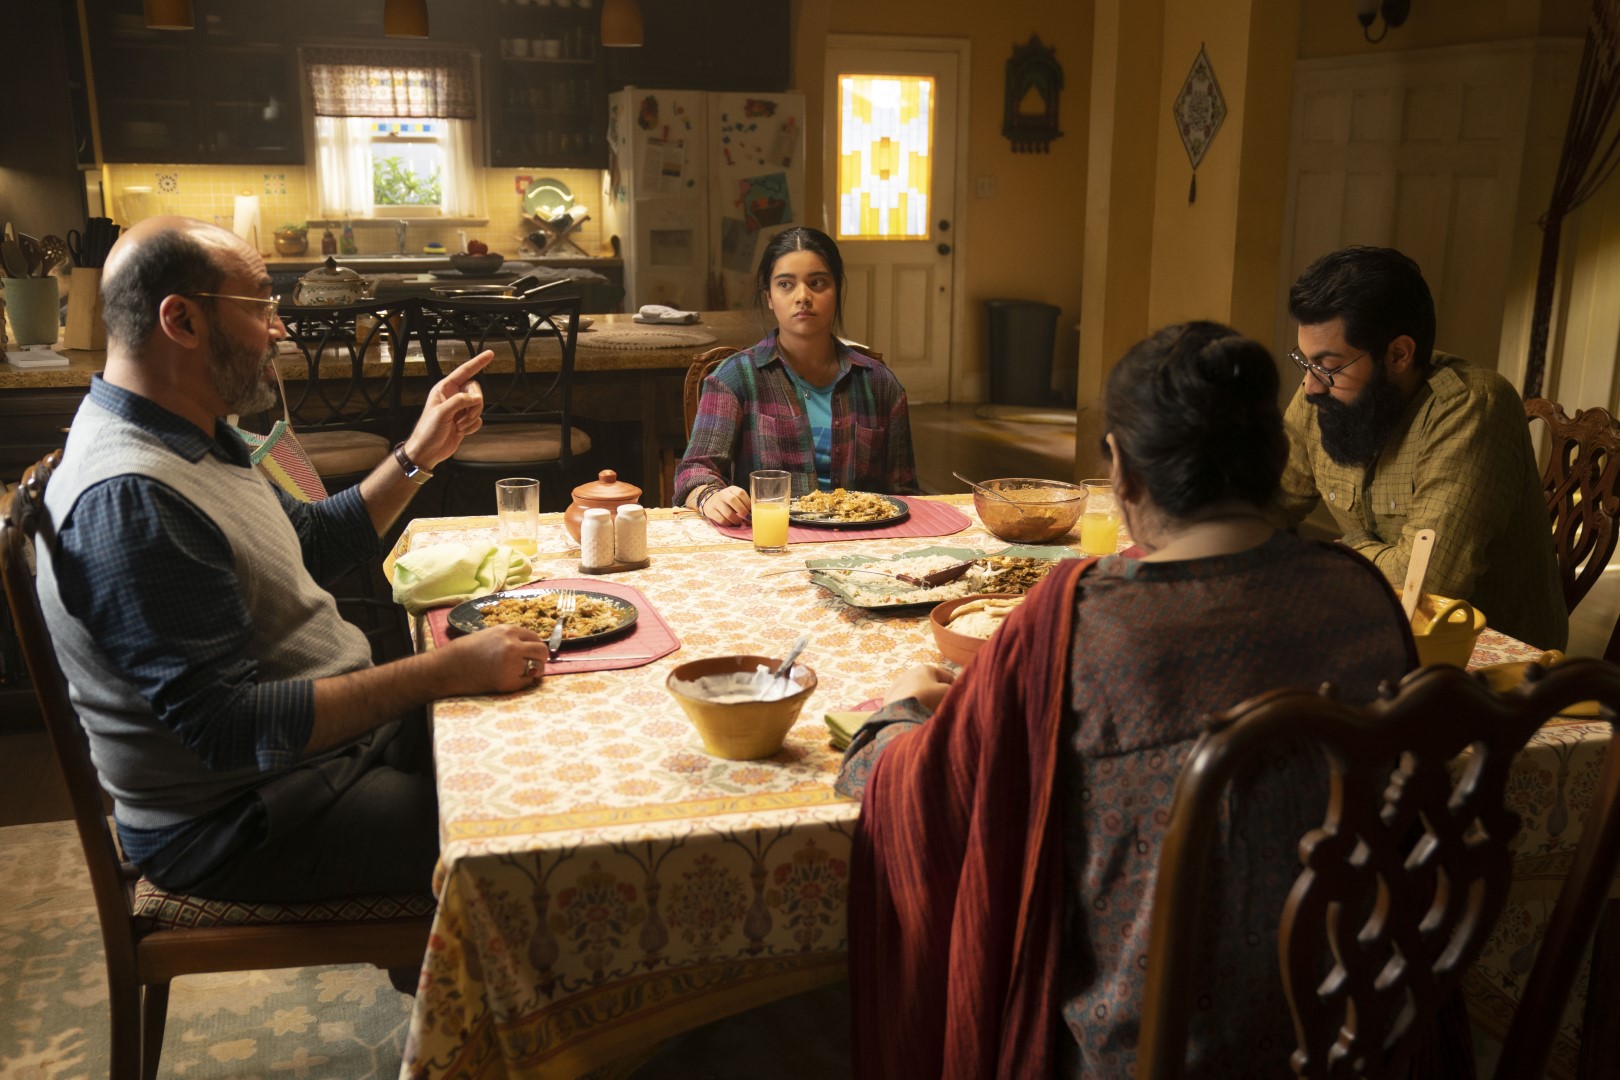 Cena da primeira temporada de Ms. Marvel. A família Khan come uma refeição sentados na mesa de jantar de sua residência. Vemos Kamala (Iman Vellani) na lateral superior da mesa quadrada, olhando emburrecida para seu pai, Yusuf (Mohan Kapur), à esquerda. Vemos apenas as costas de sua mãe, Muneeba (Zenobia Shroff), que se senta na lateral inferior da mesa, e apenas parte do perfil de seu irmão mais velho, Aamir (Saagar Shaikh), na lateral direita, olhando para seu prato. Kamala é uma menina paquistanesa de pele marrom, com cabelos pretos e longos, amarrados para trás num rabo de cavalo, usando uma camisa xadrez vermelha por cima de uma camiseta azul bebê. Yusuf é um homem paquistanês de pele marrom, cabelos e barba grisalhos e começando a ficar calvo, usando uma camisa xadrez azul escura por cima de um suéter cinza sem mangas. Muneeba é uma mulher paquistanesa de pele marrom, com os cabelos pretos presos num coque, usando um vestido tradicional rubro e azul com um tecido vermelho apoiado no seu ombro esquerdo. Aamir é um homem paquistanês de pele marrom, com cabelos pretos e uma barba longa e espessa, usando um par de óculos e uma camisa xadrez verde clara abotoada. A mesa está coberta por um tecido amarelo e branco e, acima dele, os Khan comem em seus pratos, com diversos condimentos espalhados pelos cantos da mesa e um prato principal no centro. Atrás deles, podemos ver a cozinha da casa, com uma geladeira coberta de imãs no canto direito, ao lado de uma porta branca com vitrais amarelos e azuis. As paredes da casa são amarelas e o chão é de madeira, com um tapete cinzento cobrindo a sala de jantar onde a mesa se encontra.